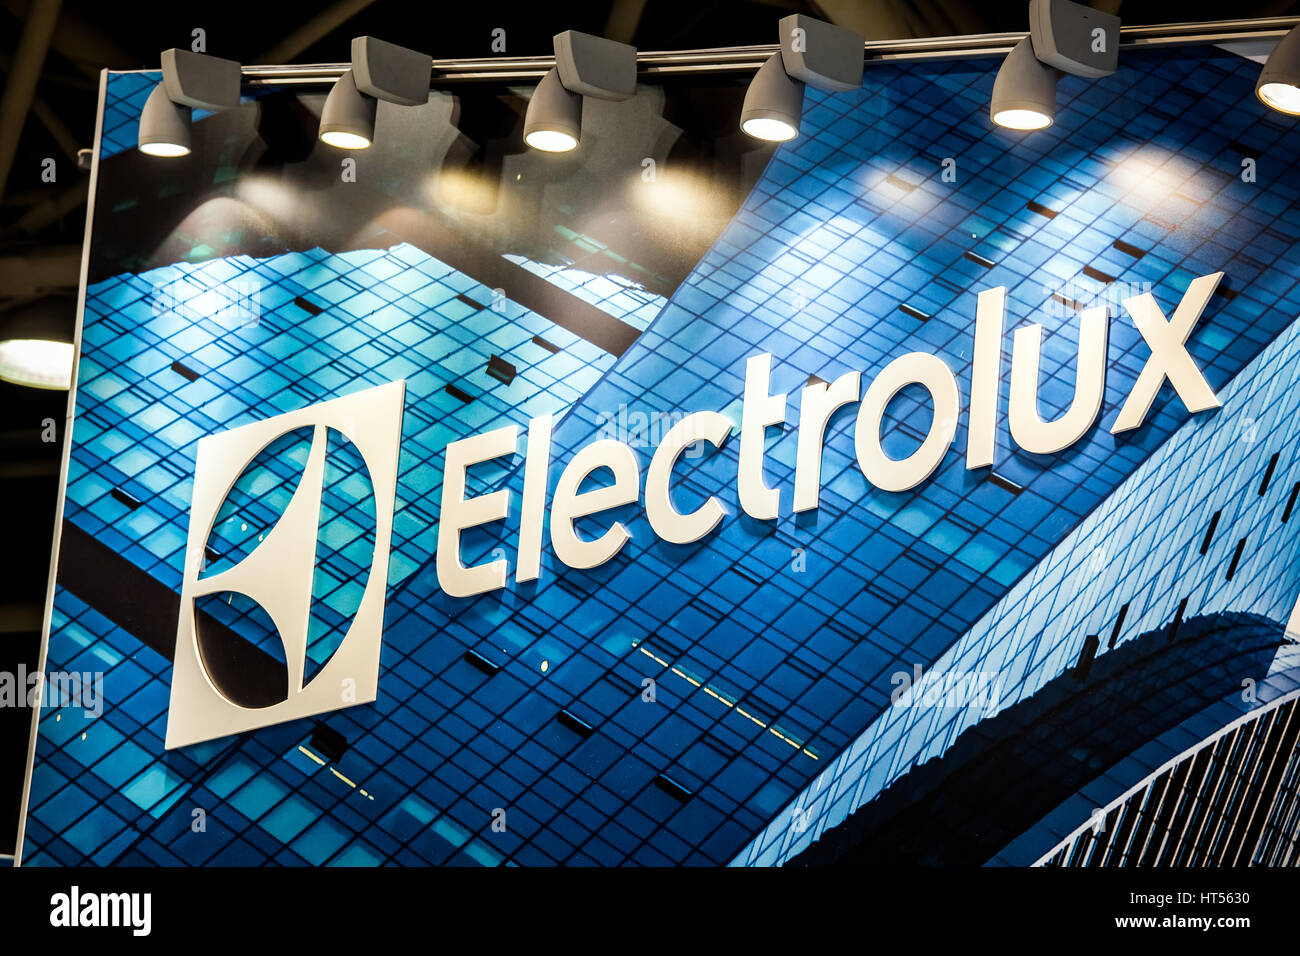 Moscou, Russie - Février 2016 : AB Electrolux logo de l'entreprise sur le mur. Electrolux est une multinationale suédoise accueil fabricant d'appareils ménagers Banque D'Images